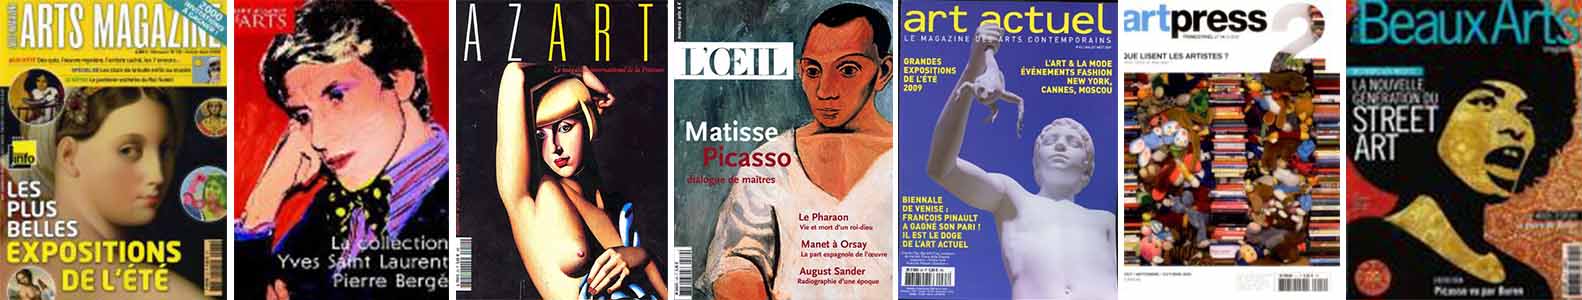 Visuel présentant des magazines dédiés à la peinture